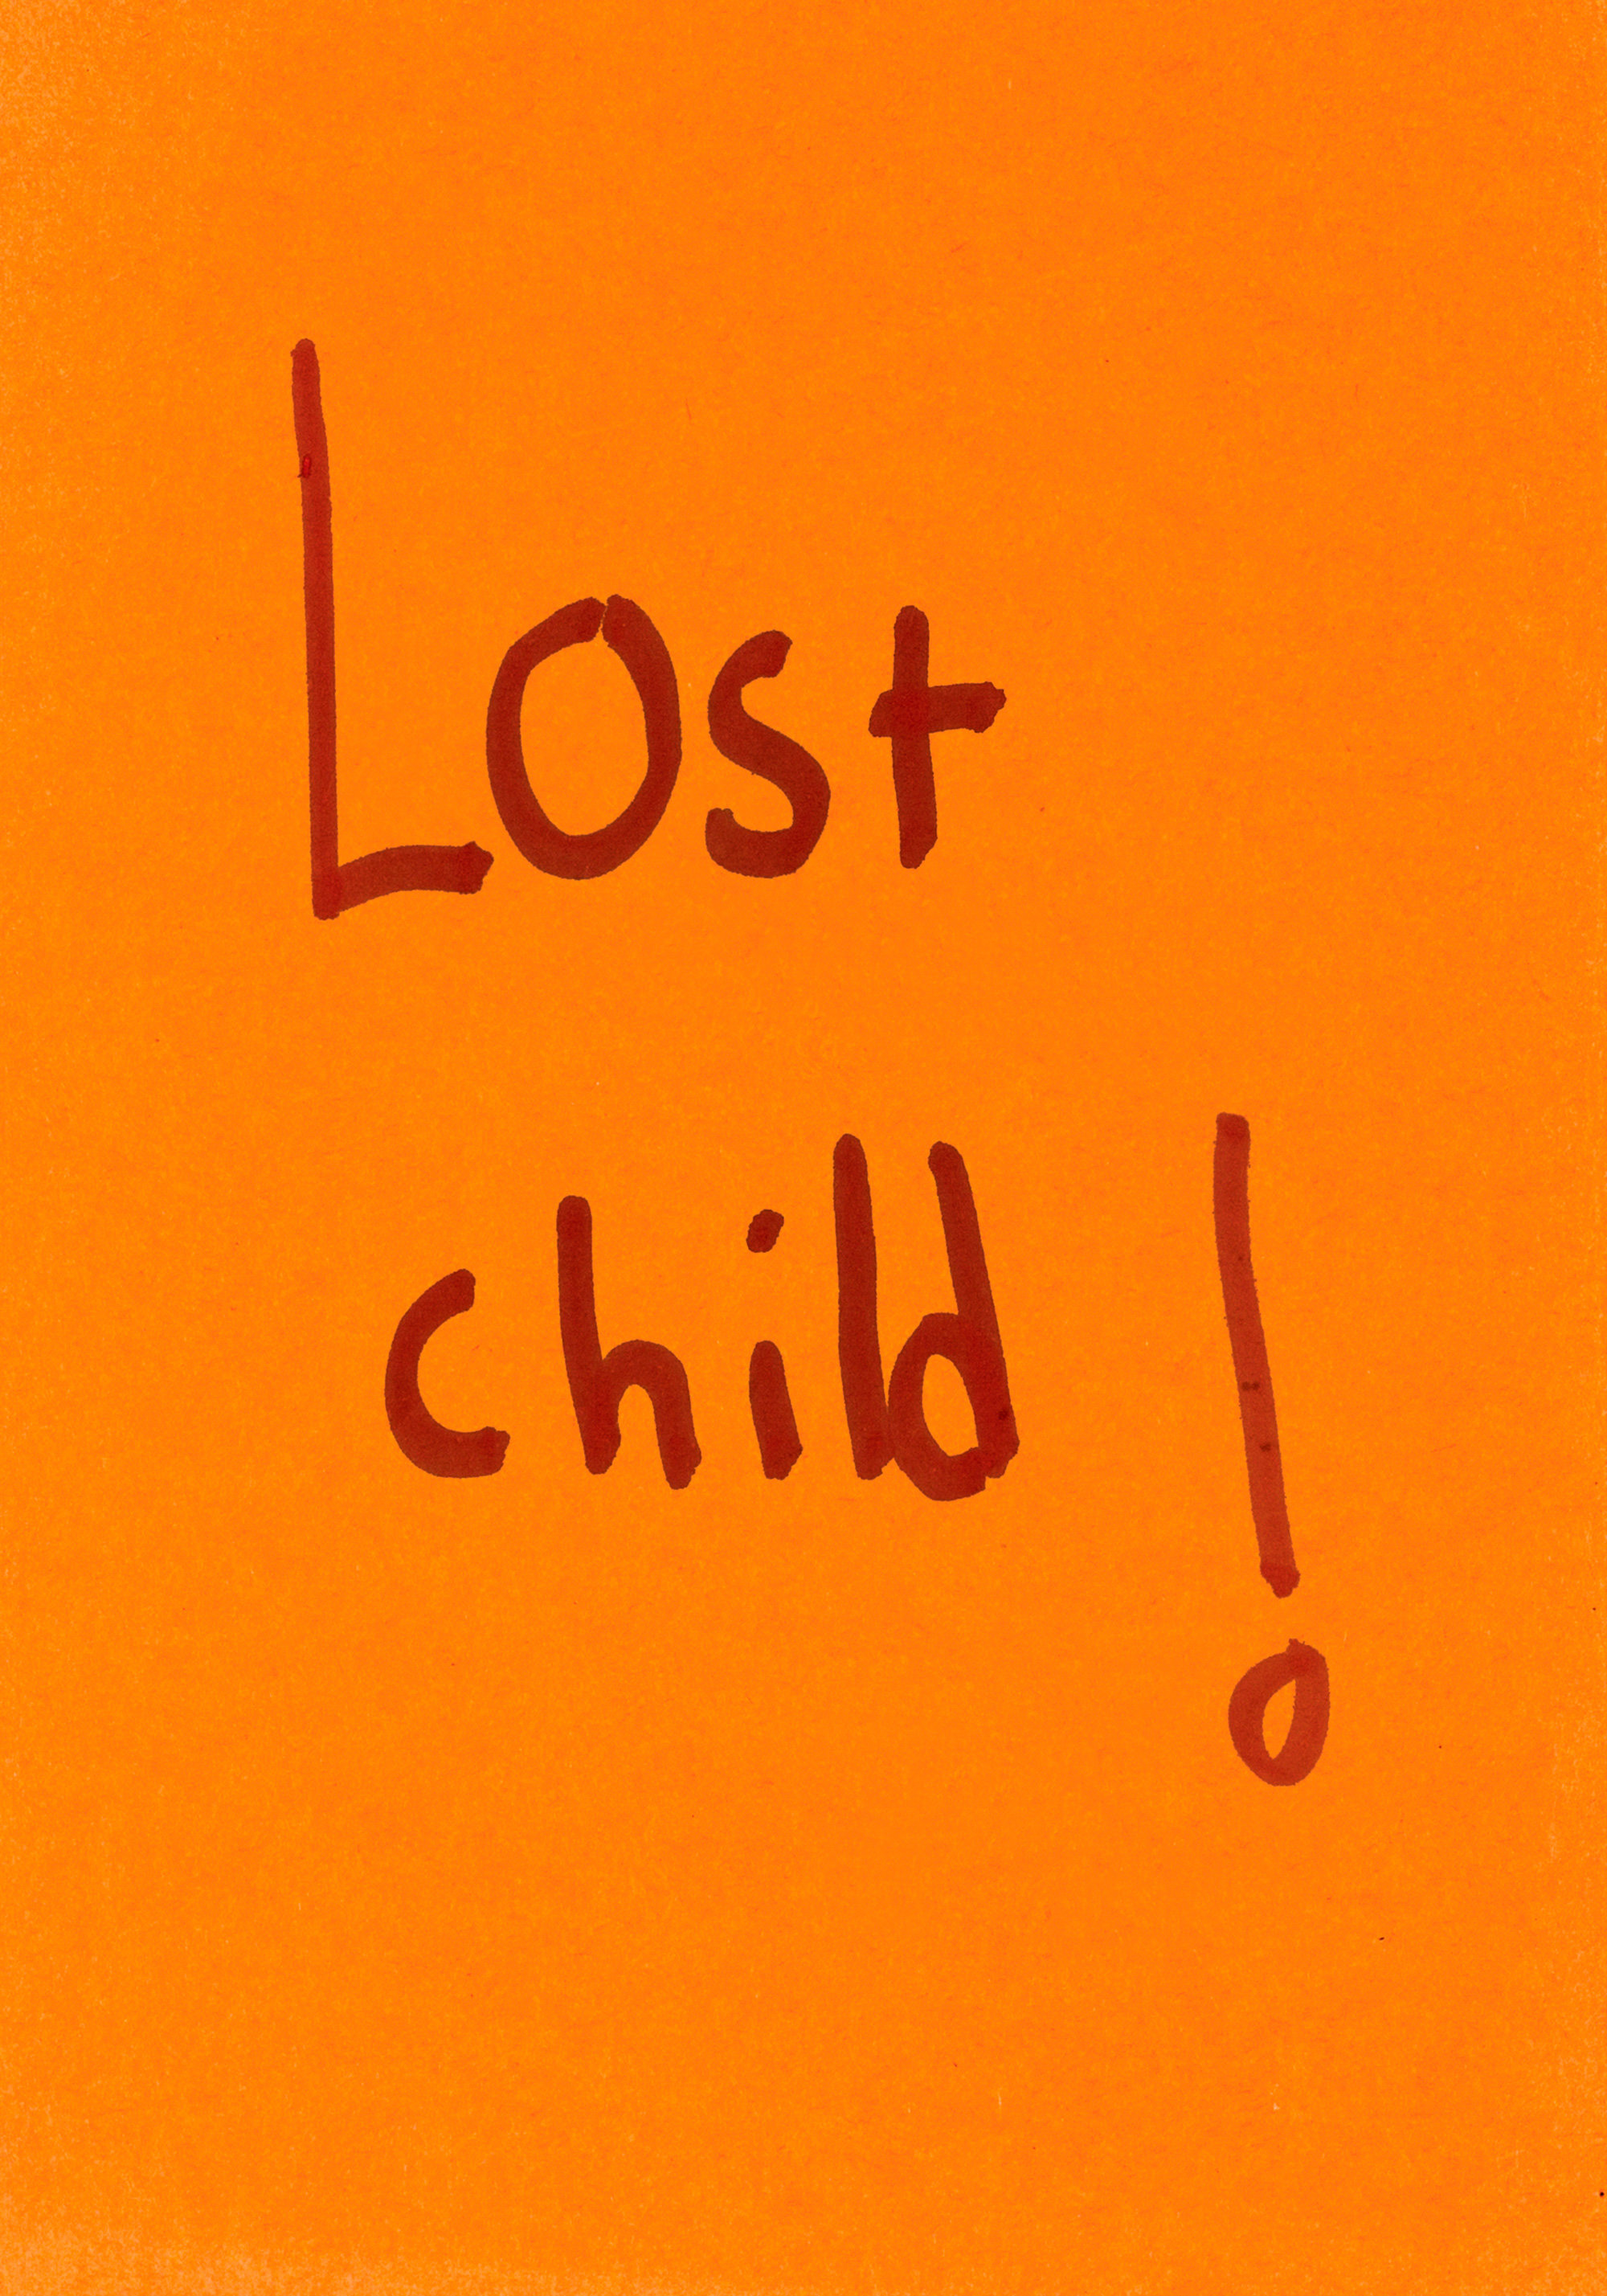 販売本物[レア] Miranda July / Lost Child! アート・デザイン・音楽